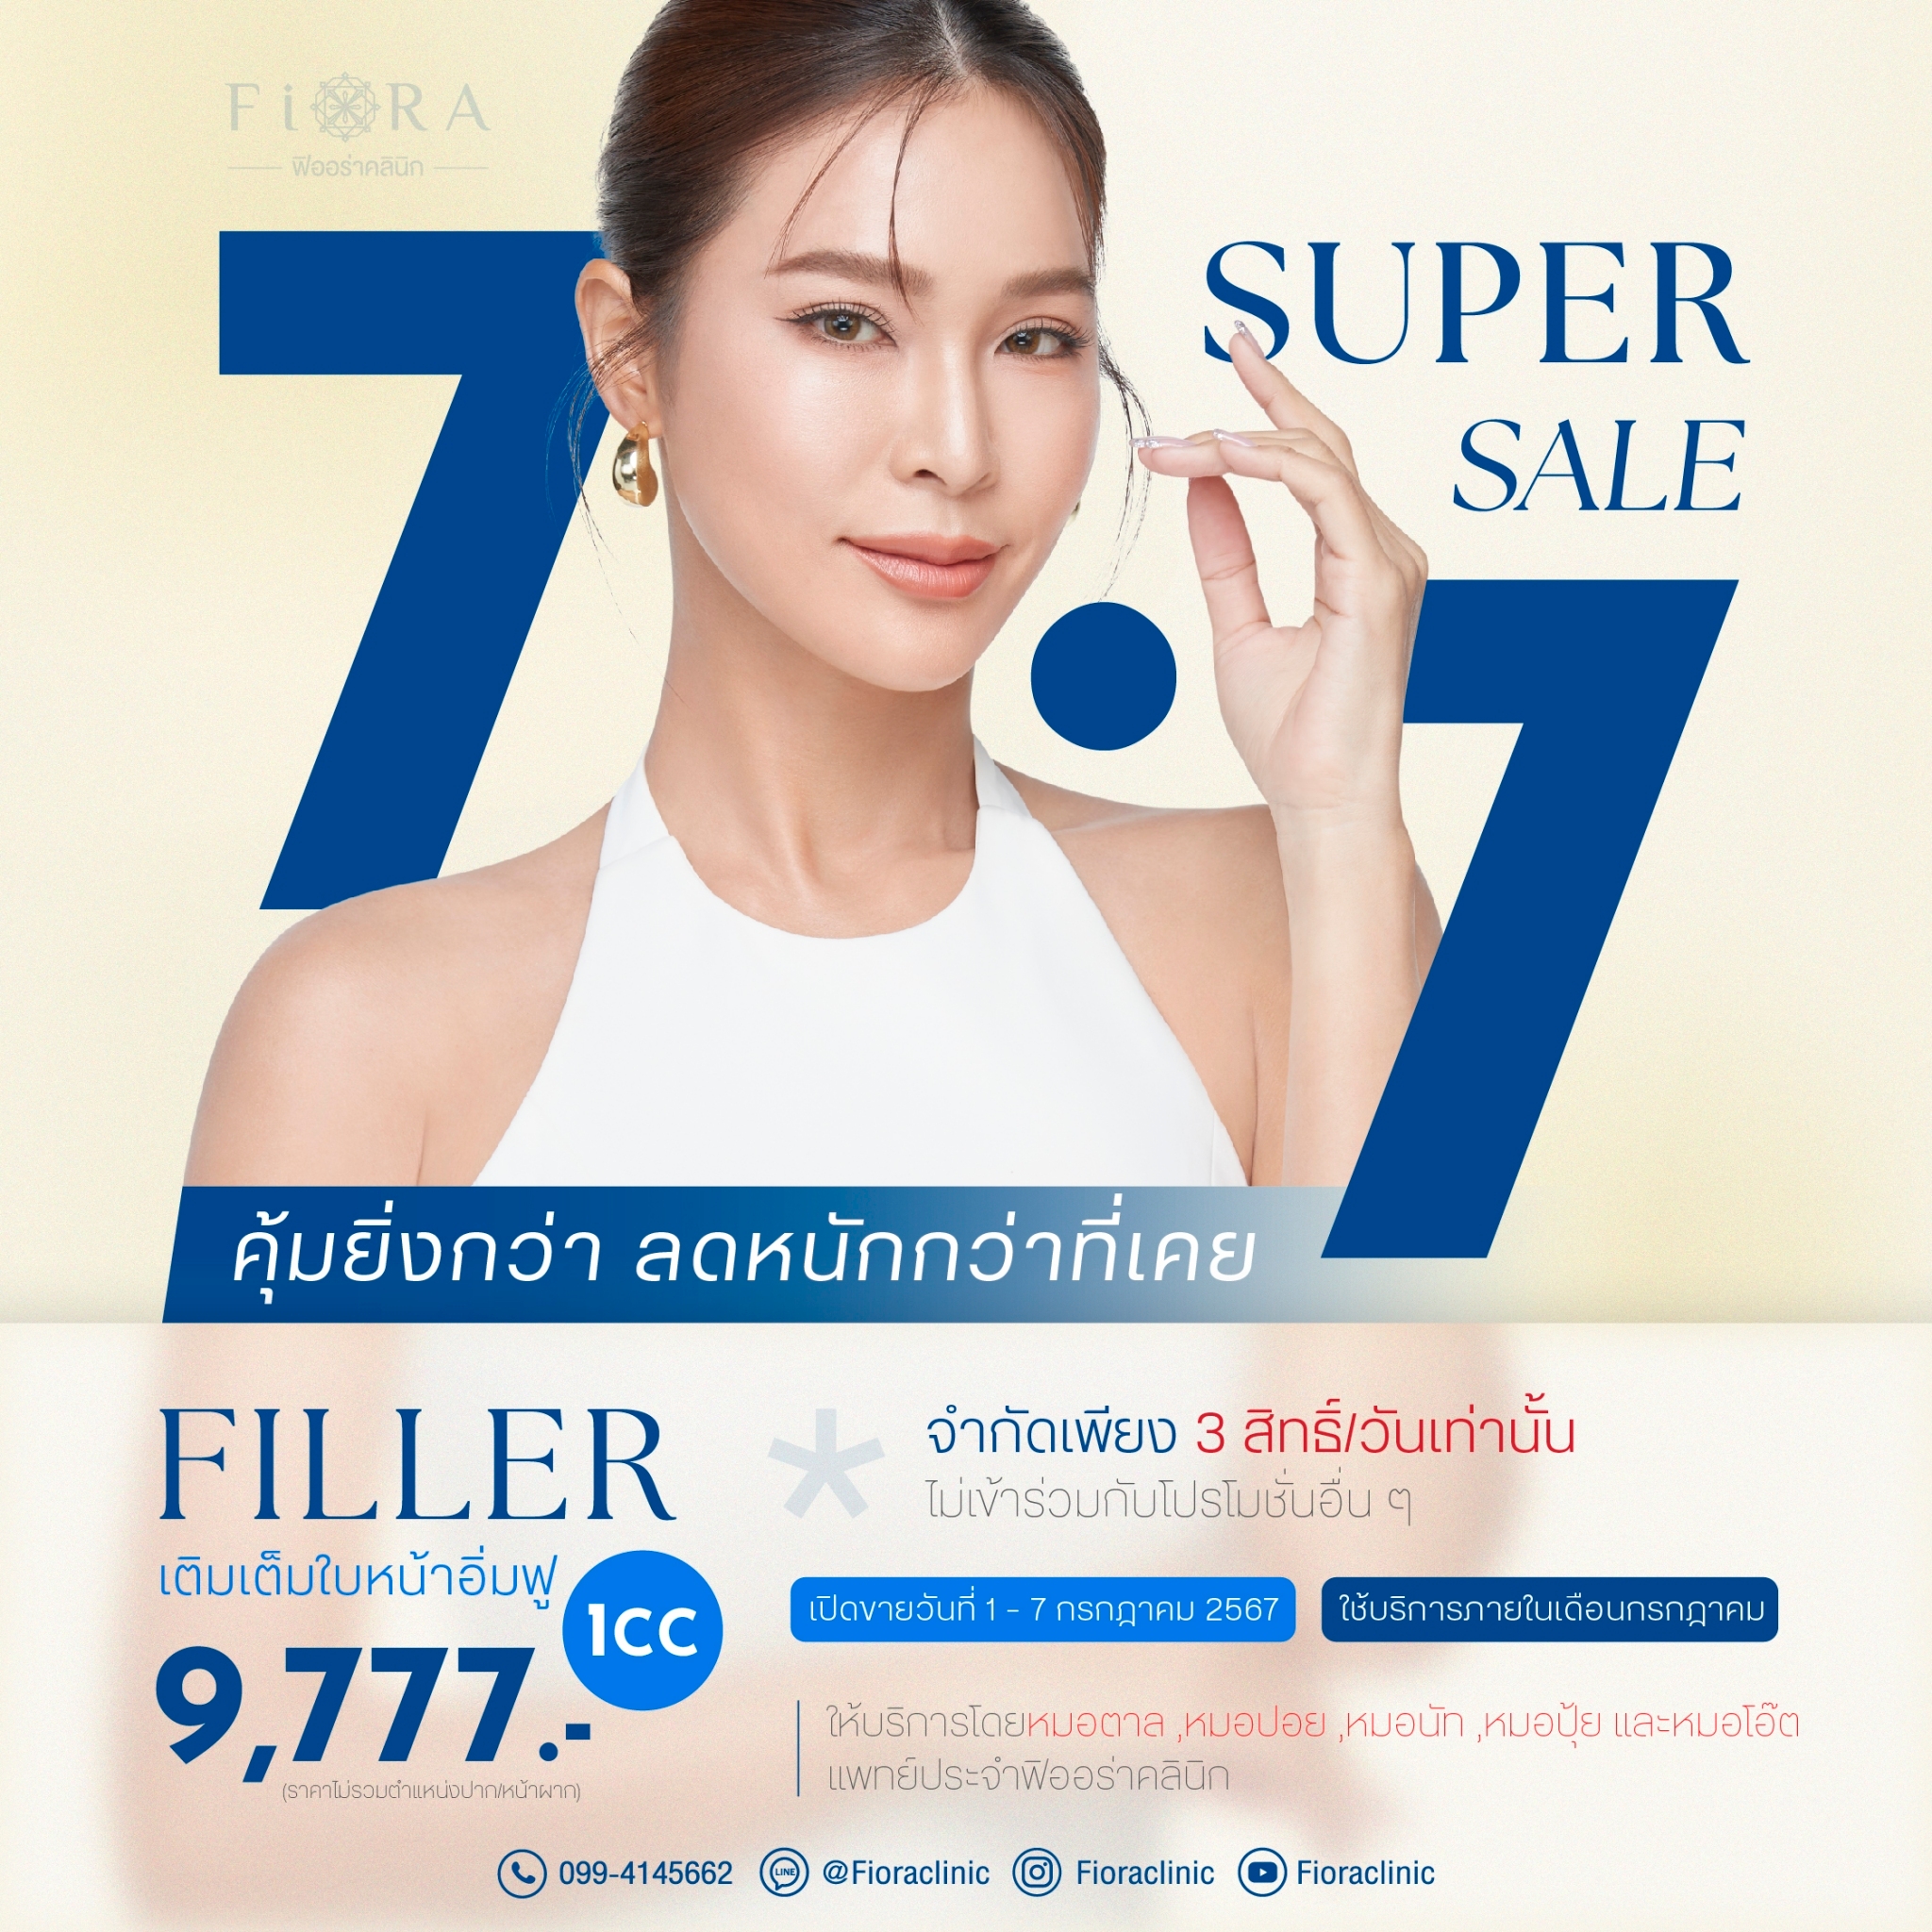 ฟิออร่าคลินิก จัดดีล 7.7 Super Sale Filler Restylane 9,777 Fiora Clinic